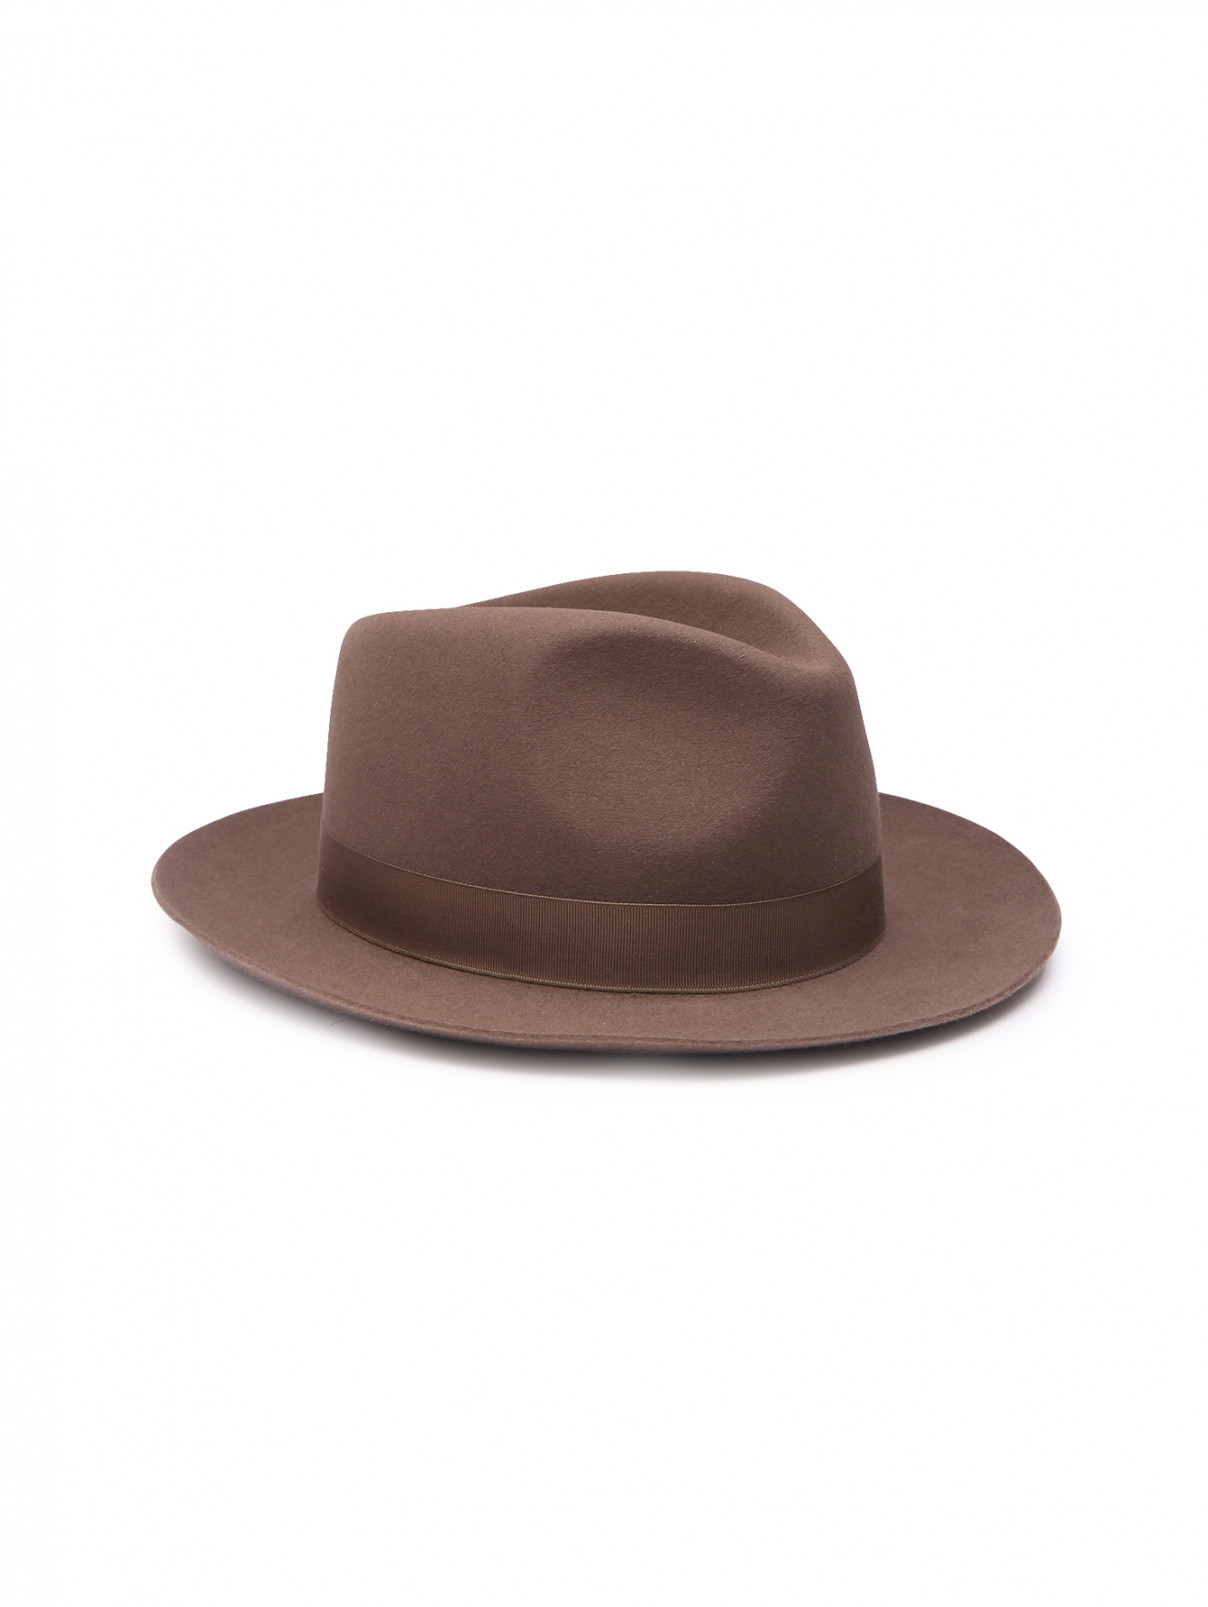 Шляпа из шерсти Stetson  –  Общий вид  – Цвет:  Бежевый